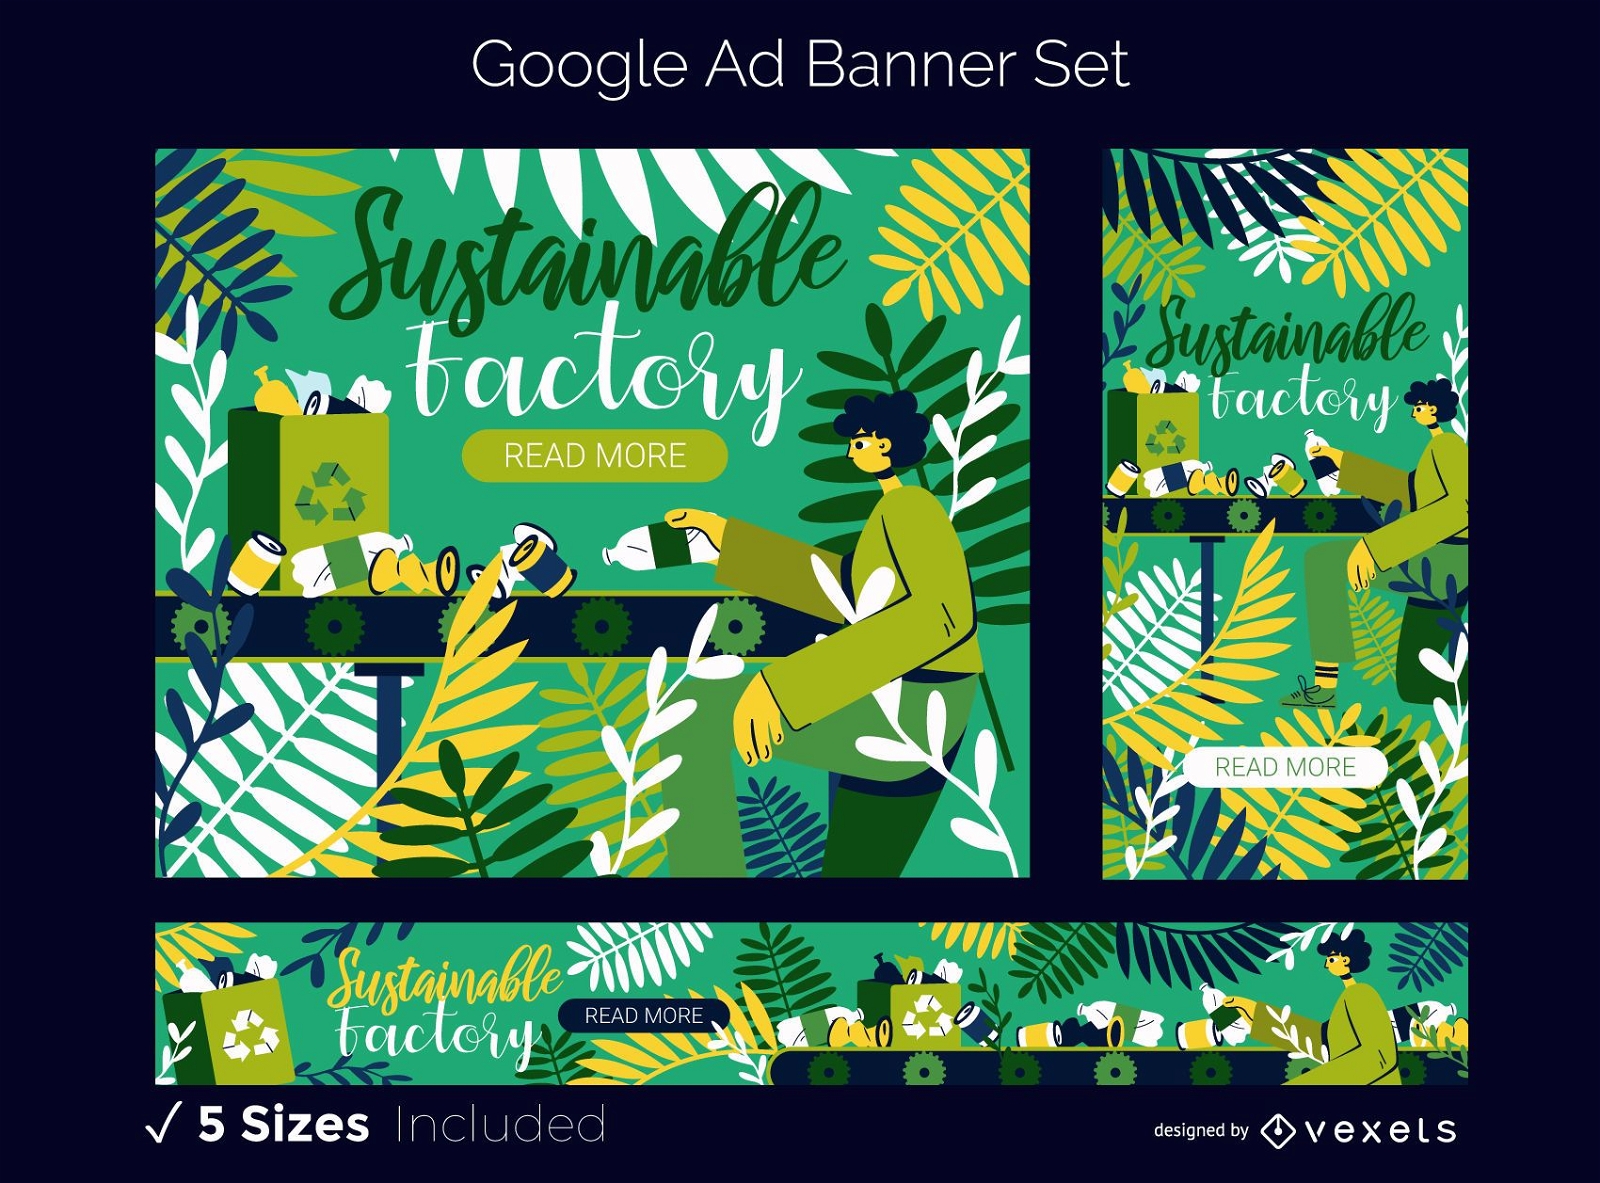 Google Ad Banner Set von Eco Factory